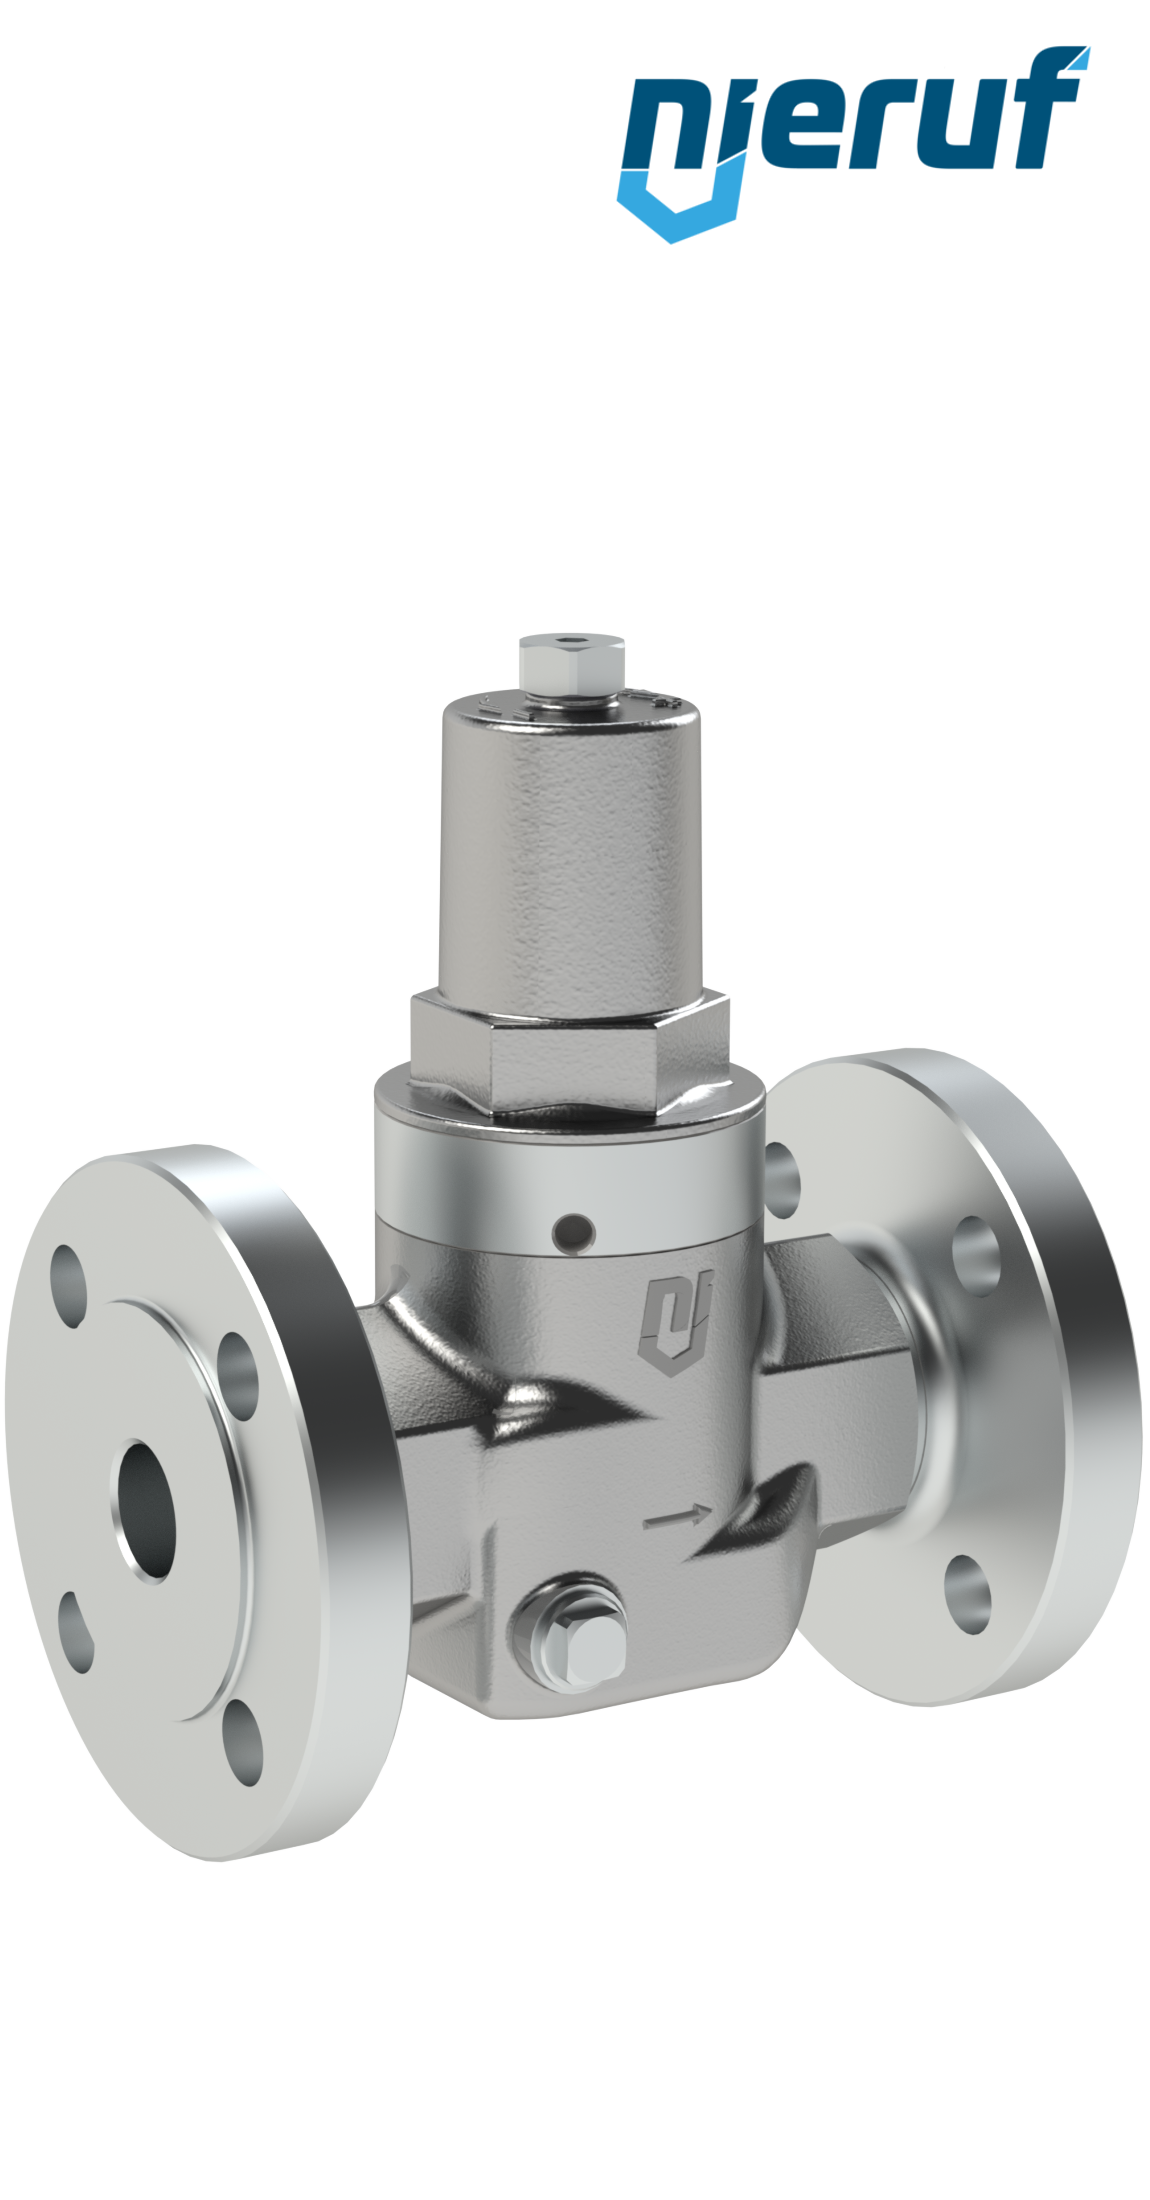 Piston-pressure reducing valve DN20 DM11 flange ANSI 150 stainless steel FPM / FKM 2.0 - 20.0 bar